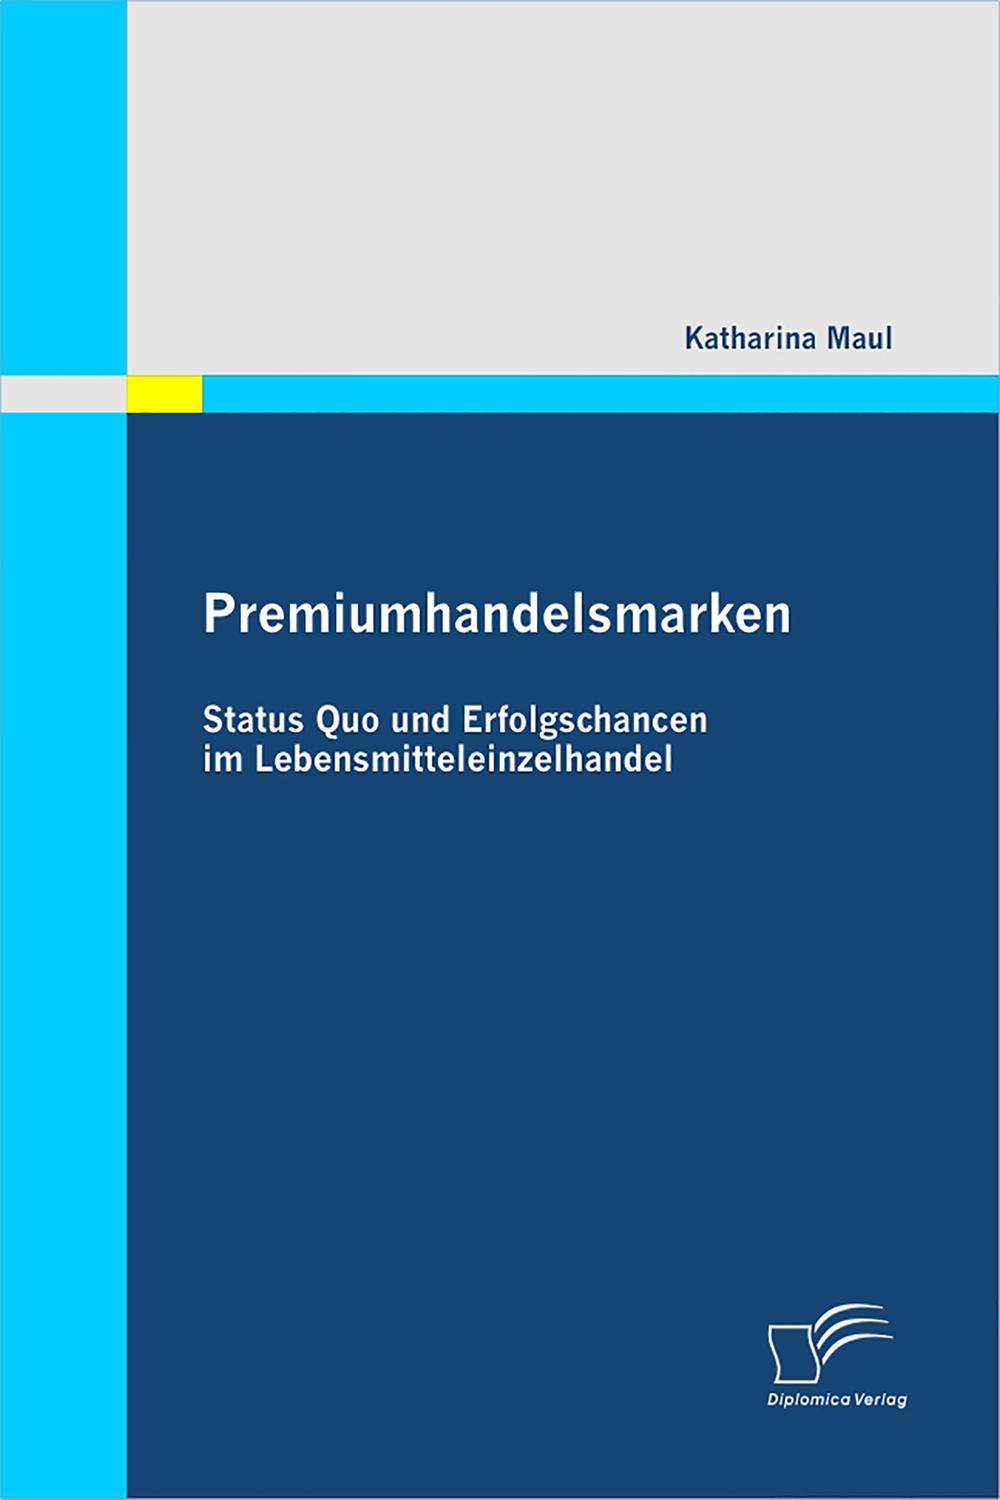 Premiumhandelsmarken: Status Quo und Erfolgschancen im Lebensmitteleinzelhandel - Katharina Maul